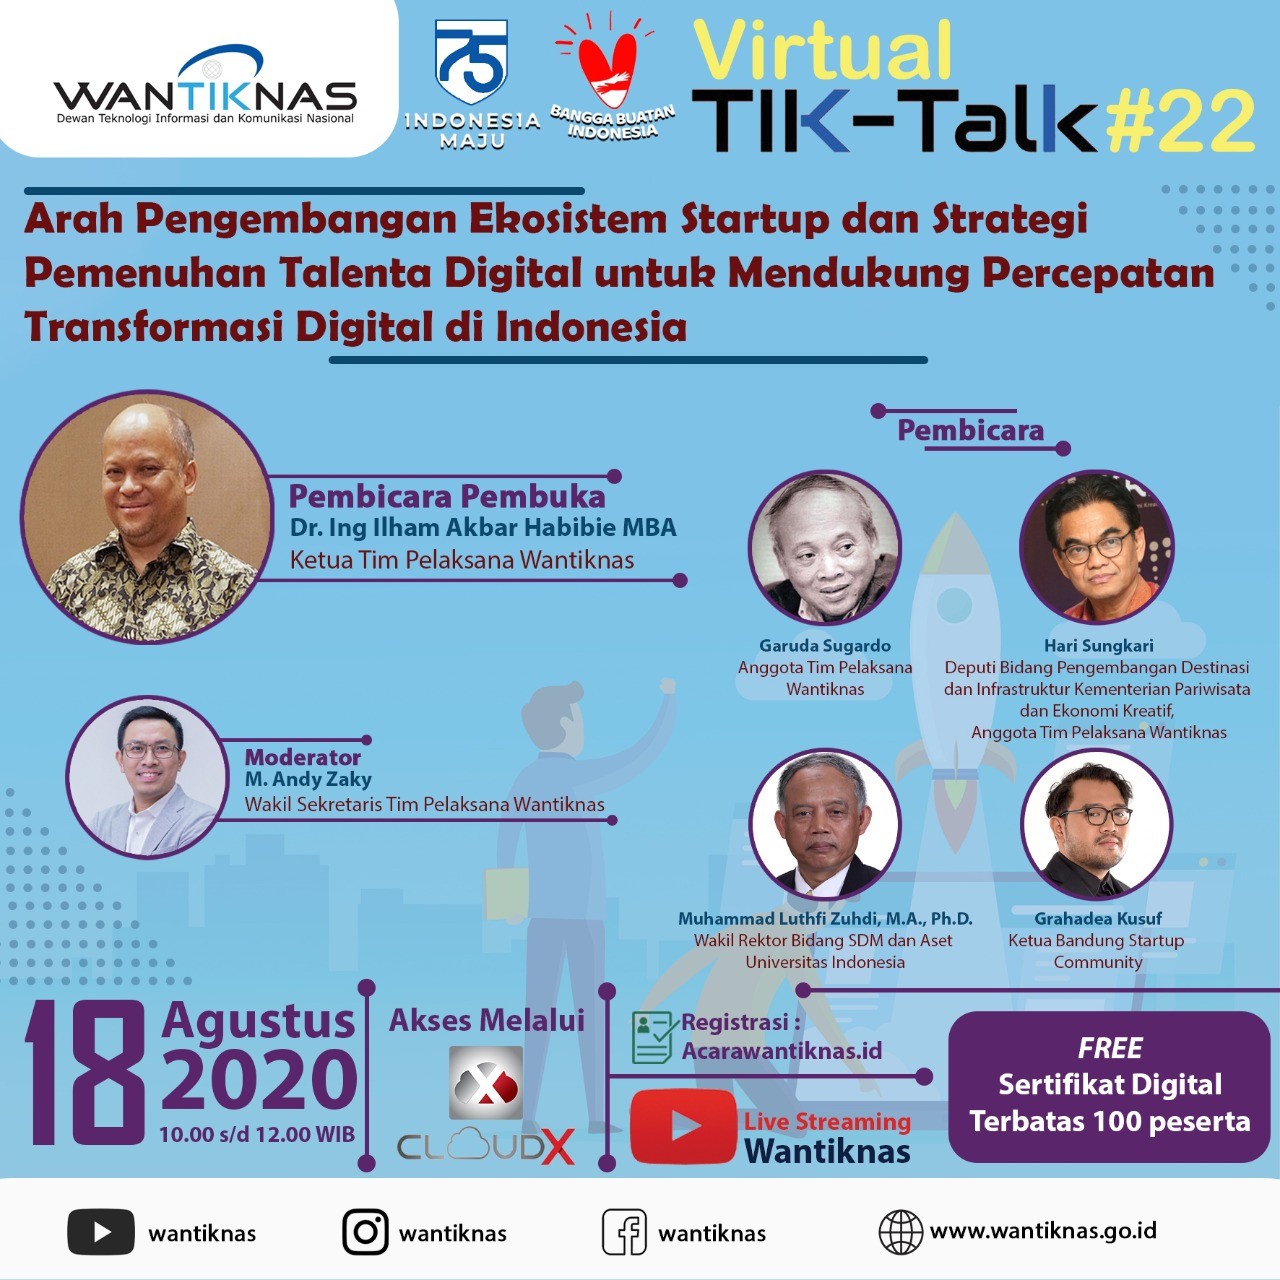 Arah Pengembangan Ekosistem Startup dan Strategi Pemenuhan Talenta Digital untuk Mendukung Percepatan Transformasi Digital di Indonesia